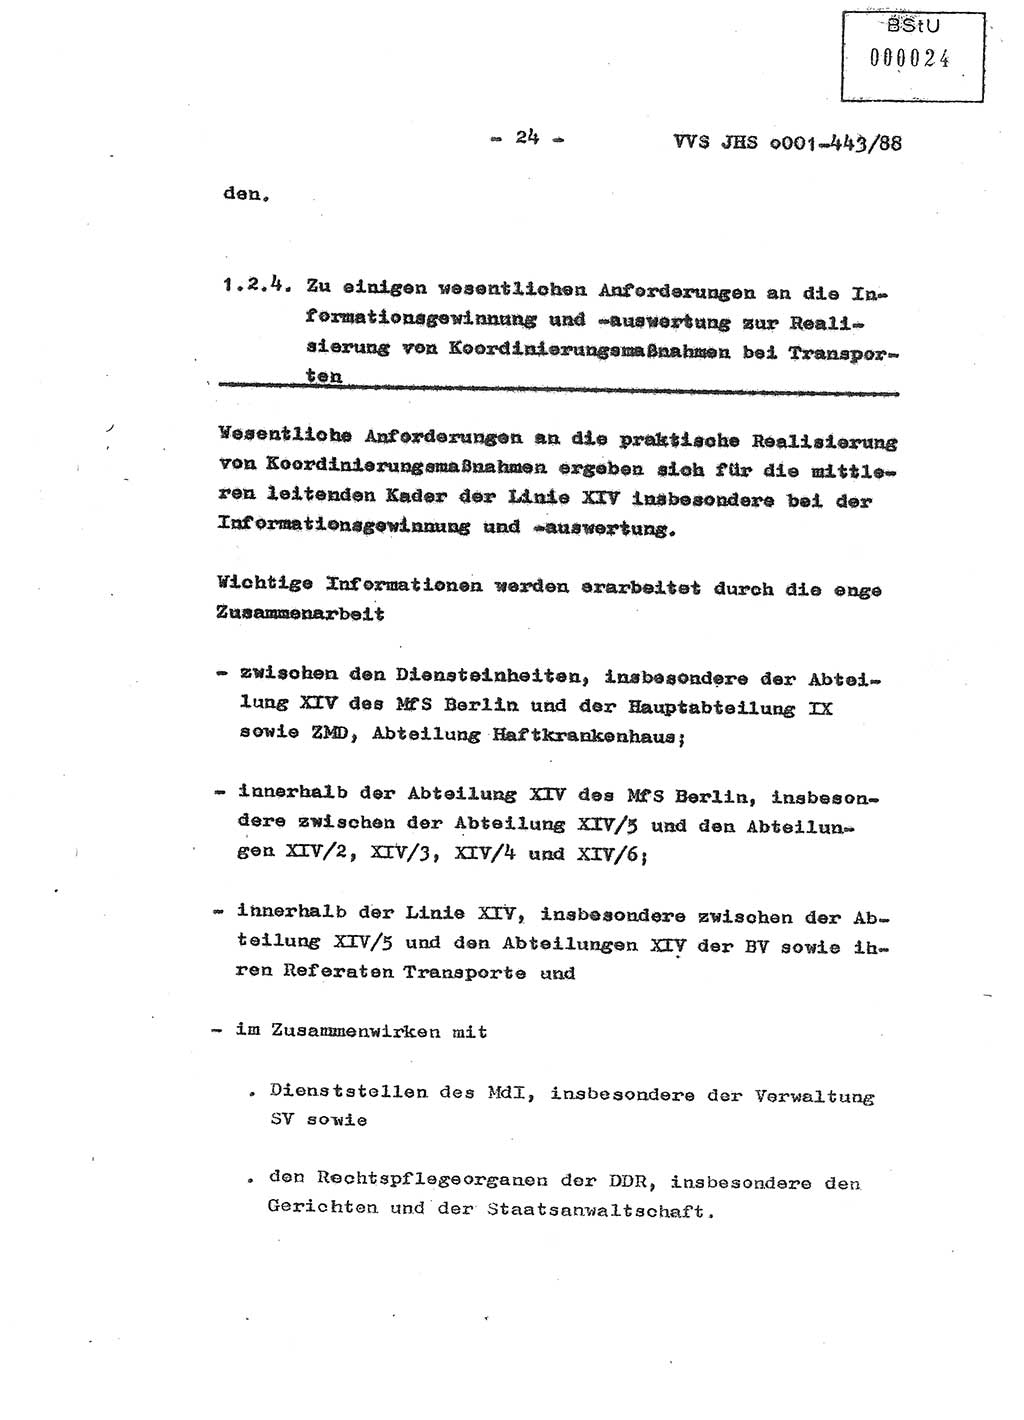 Diplomarbeit Hauptmann Michael Rast (Abt. ⅩⅣ), Major Bernd Rahaus (Abt. ⅩⅣ), Ministerium für Staatssicherheit (MfS) [Deutsche Demokratische Republik (DDR)], Juristische Hochschule (JHS), Vertrauliche Verschlußsache (VVS) o001-443/88, Potsdam 1988, Seite 24 (Dipl.-Arb. MfS DDR JHS VVS o001-443/88 1988, S. 24)